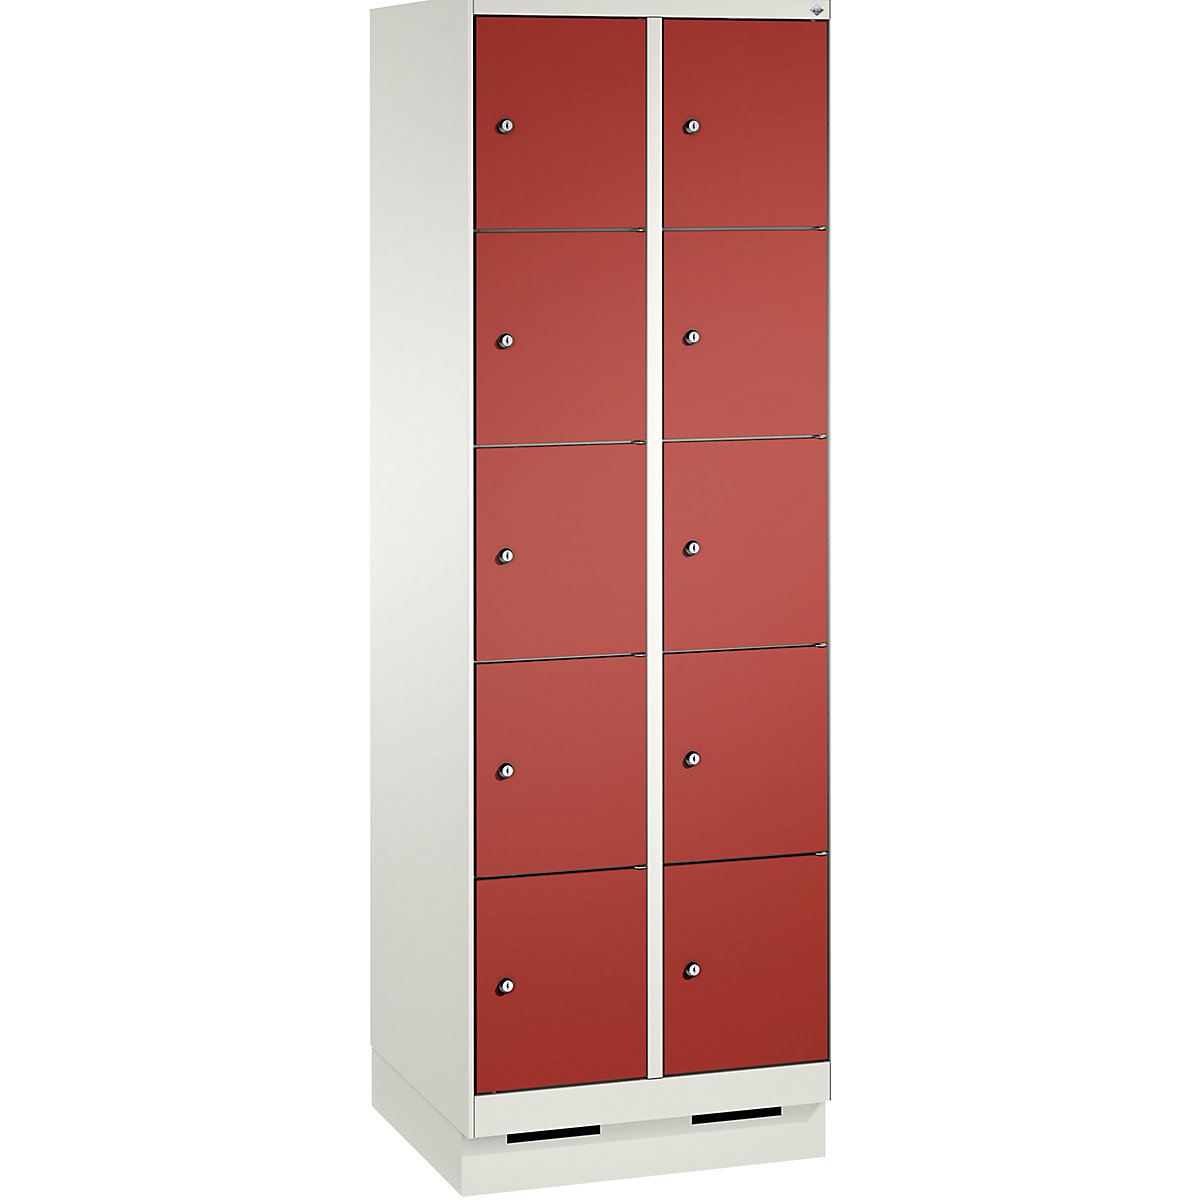 Armoire à casiers sur socle EVOLO – C+P, 2 compartiments, 5 casiers chacun, largeur compartiments 300 mm, blanc trafic / rouge feu-2